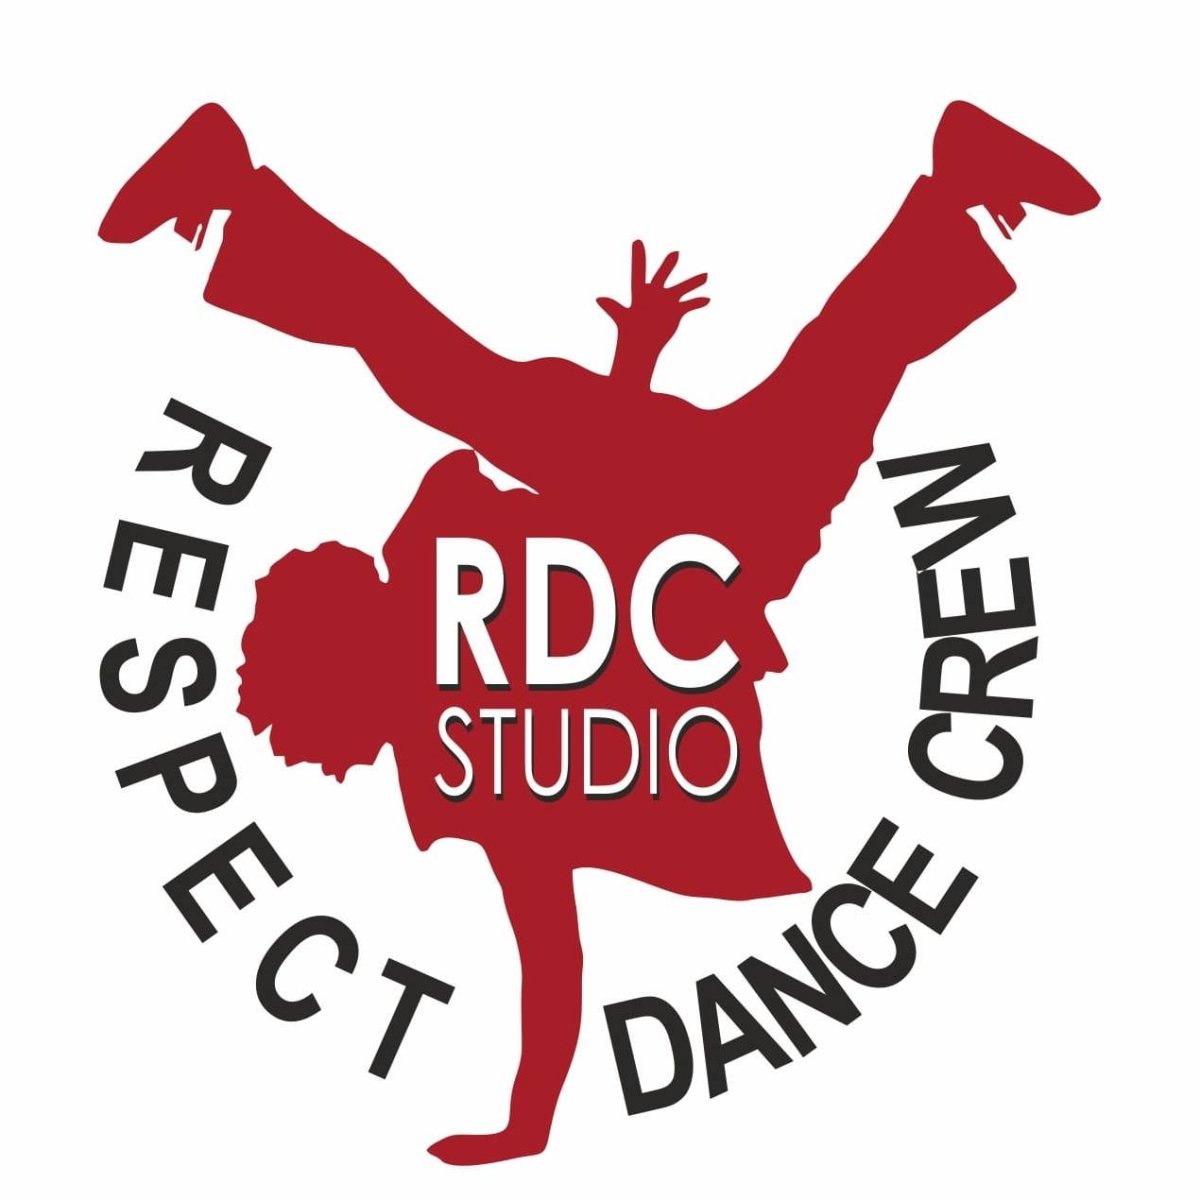 RDC studio / RESPECT dance crew